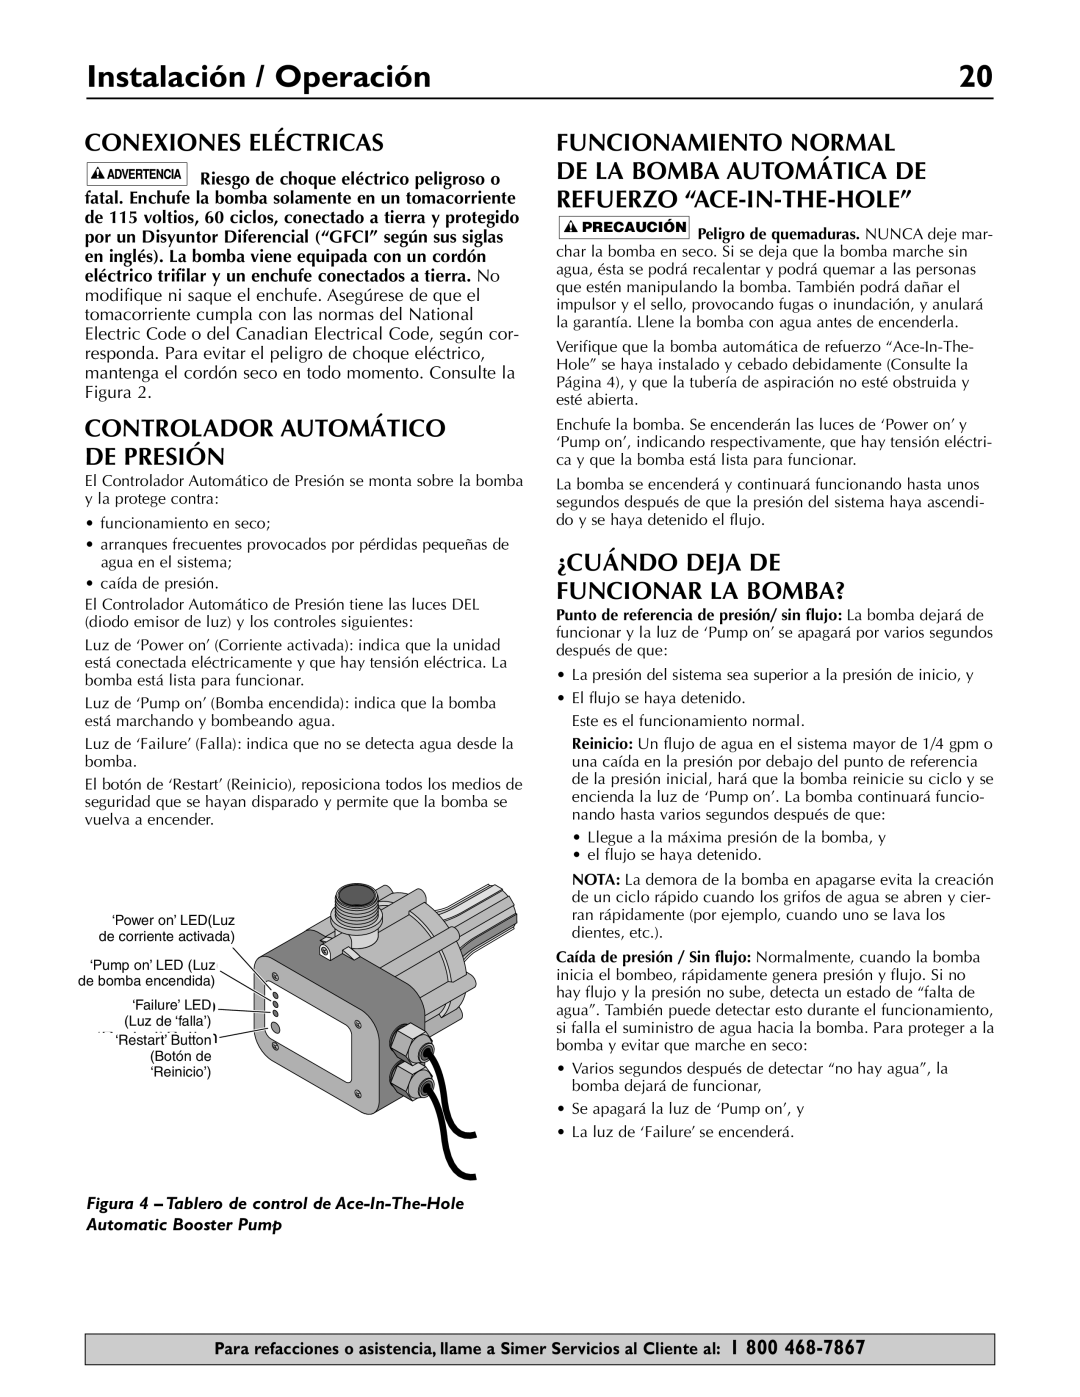 Simer Pumps 3075SS-01 owner manual Instalación / Operación, Conexiones Eléctricas, Controlador Automático De Presión 